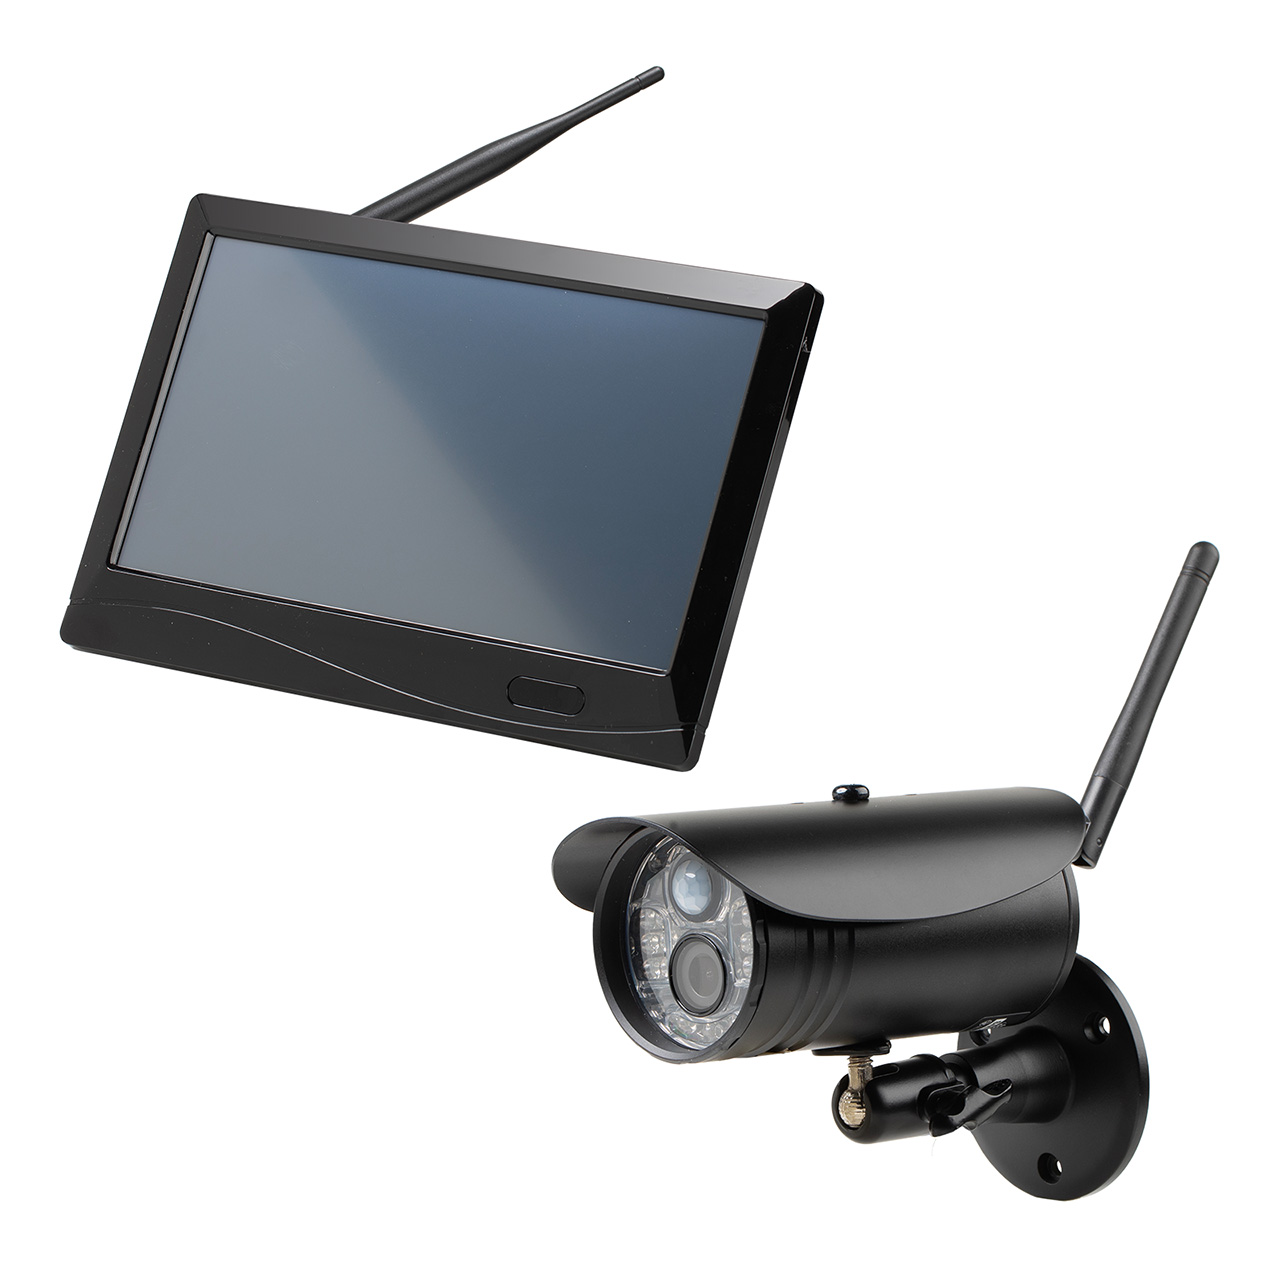 防犯カメラ ワイヤレスモニターセット 1台セット IP66防水防塵 屋外対応カメラ ワイヤレスカメラ HDMI出力可能  SDカード/HDD 録画対応 配線工事不要 簡単接続 400-CAM095-1